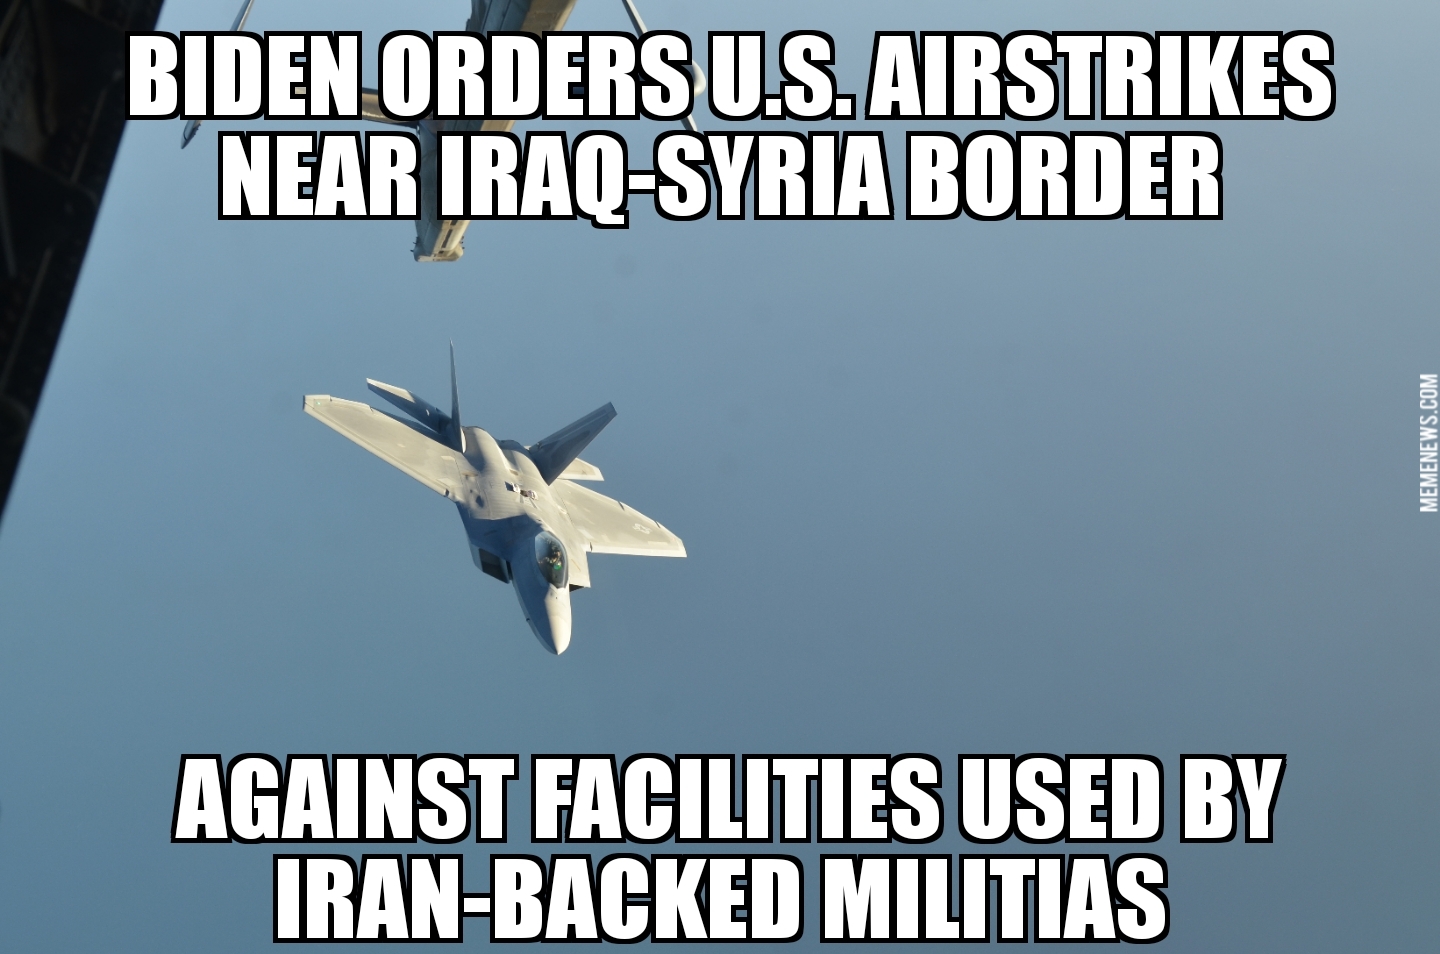 U.S. airstrikes against Iran militias